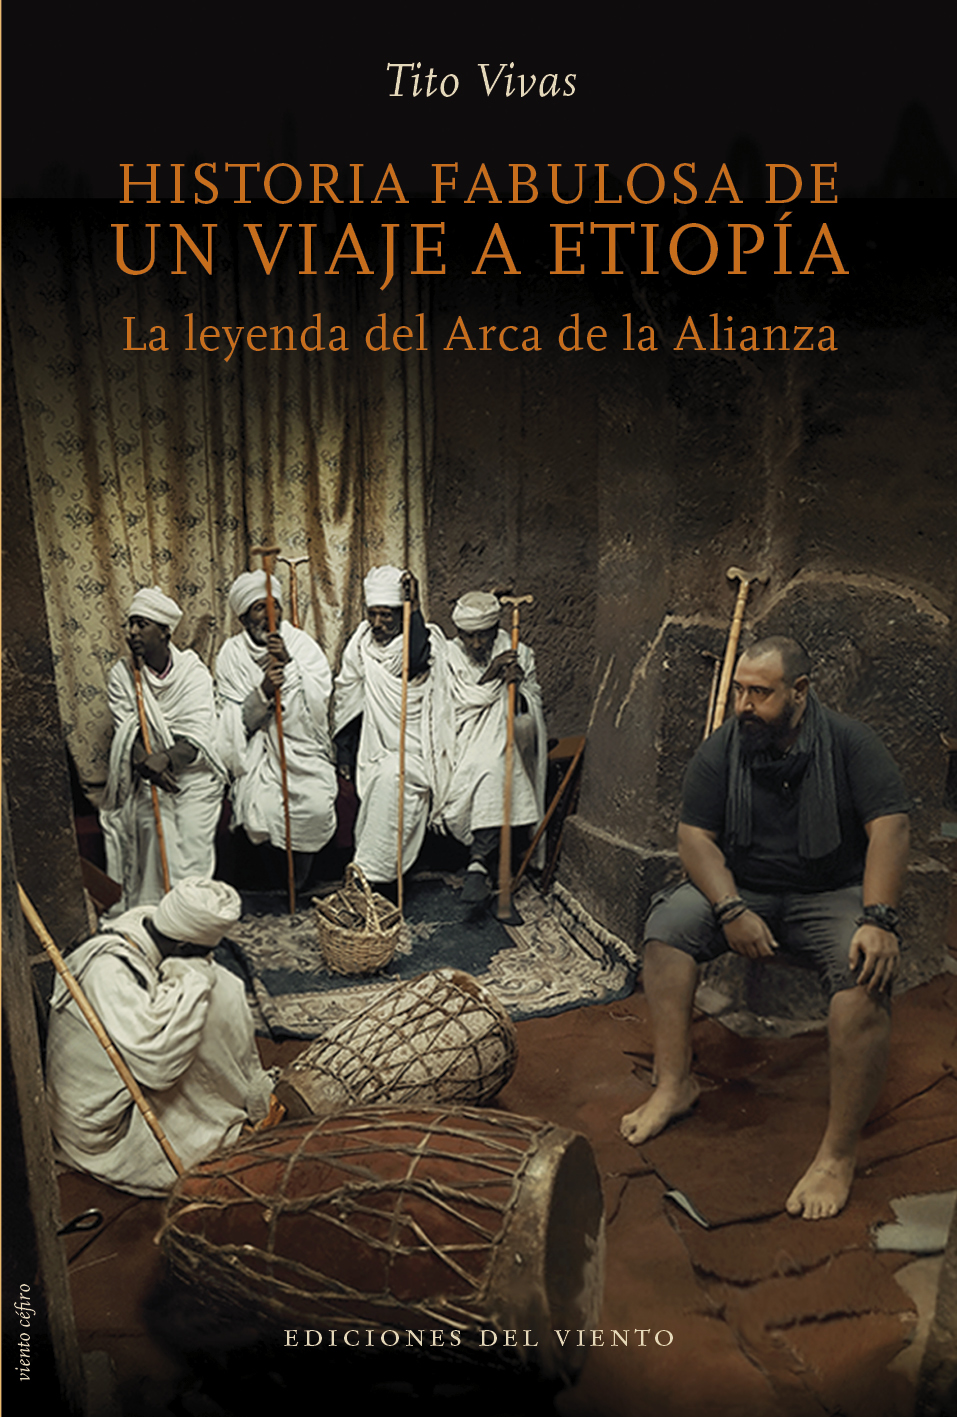 HISTORIA FABULOSA DE UN VIAJE A ETIOPIA «La leyenda del Arca de la Alianza»